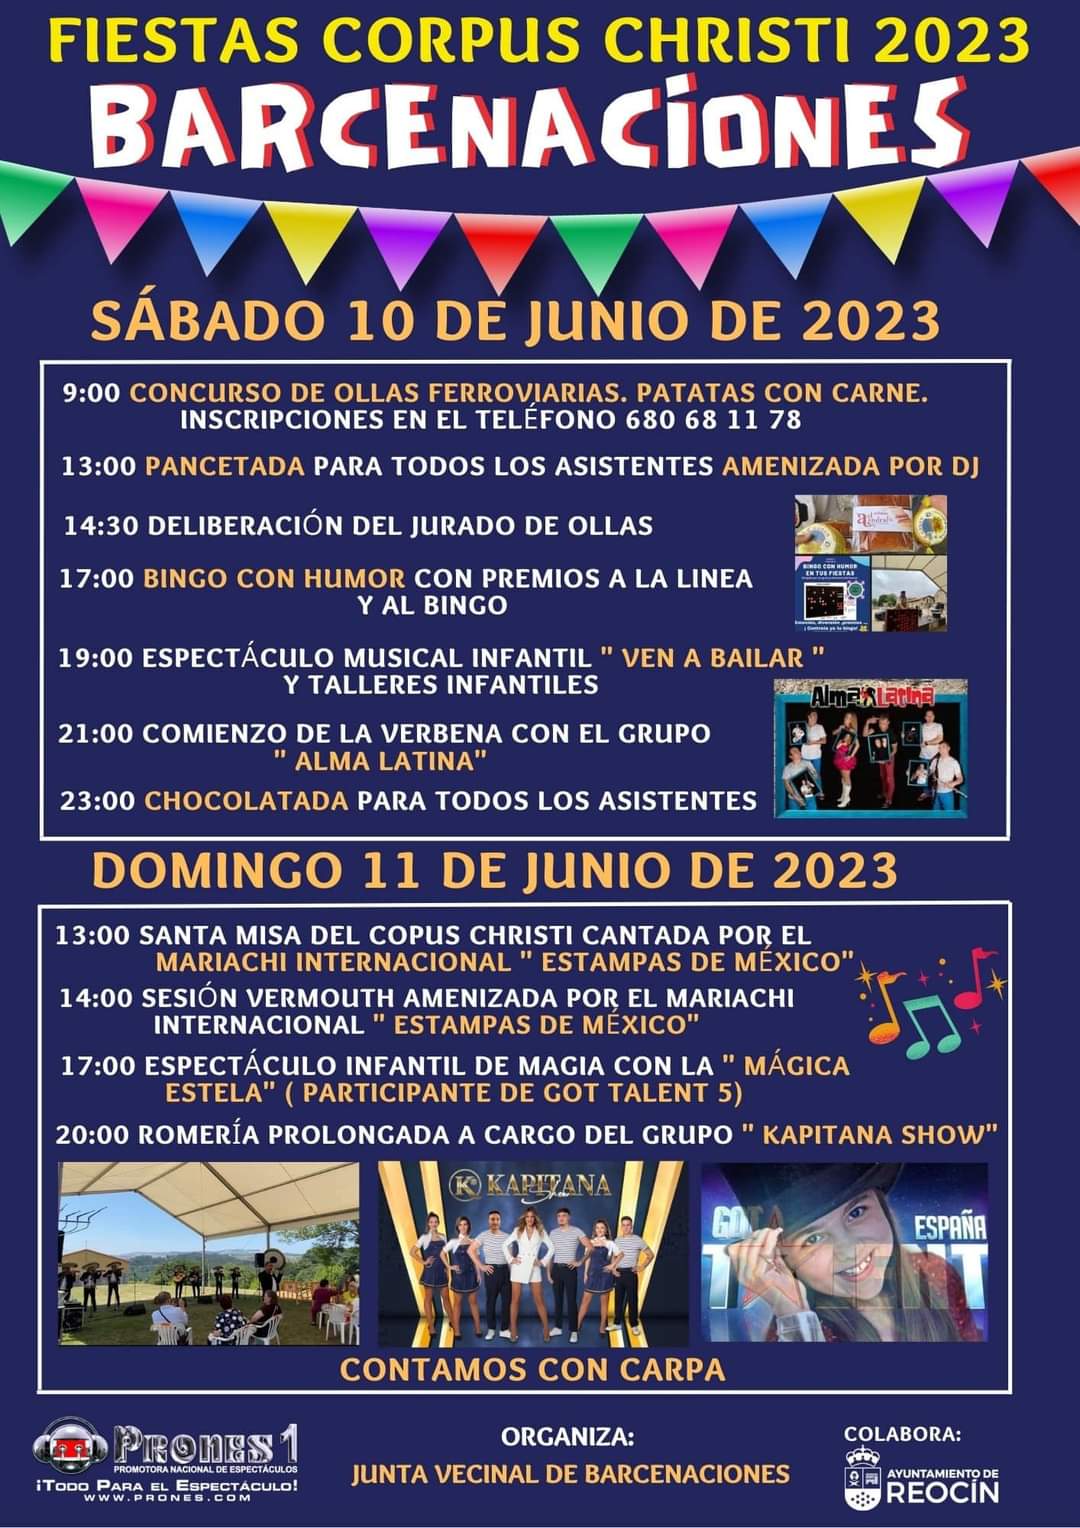 Fiestas Corpus Christi Barcenaciones 2023